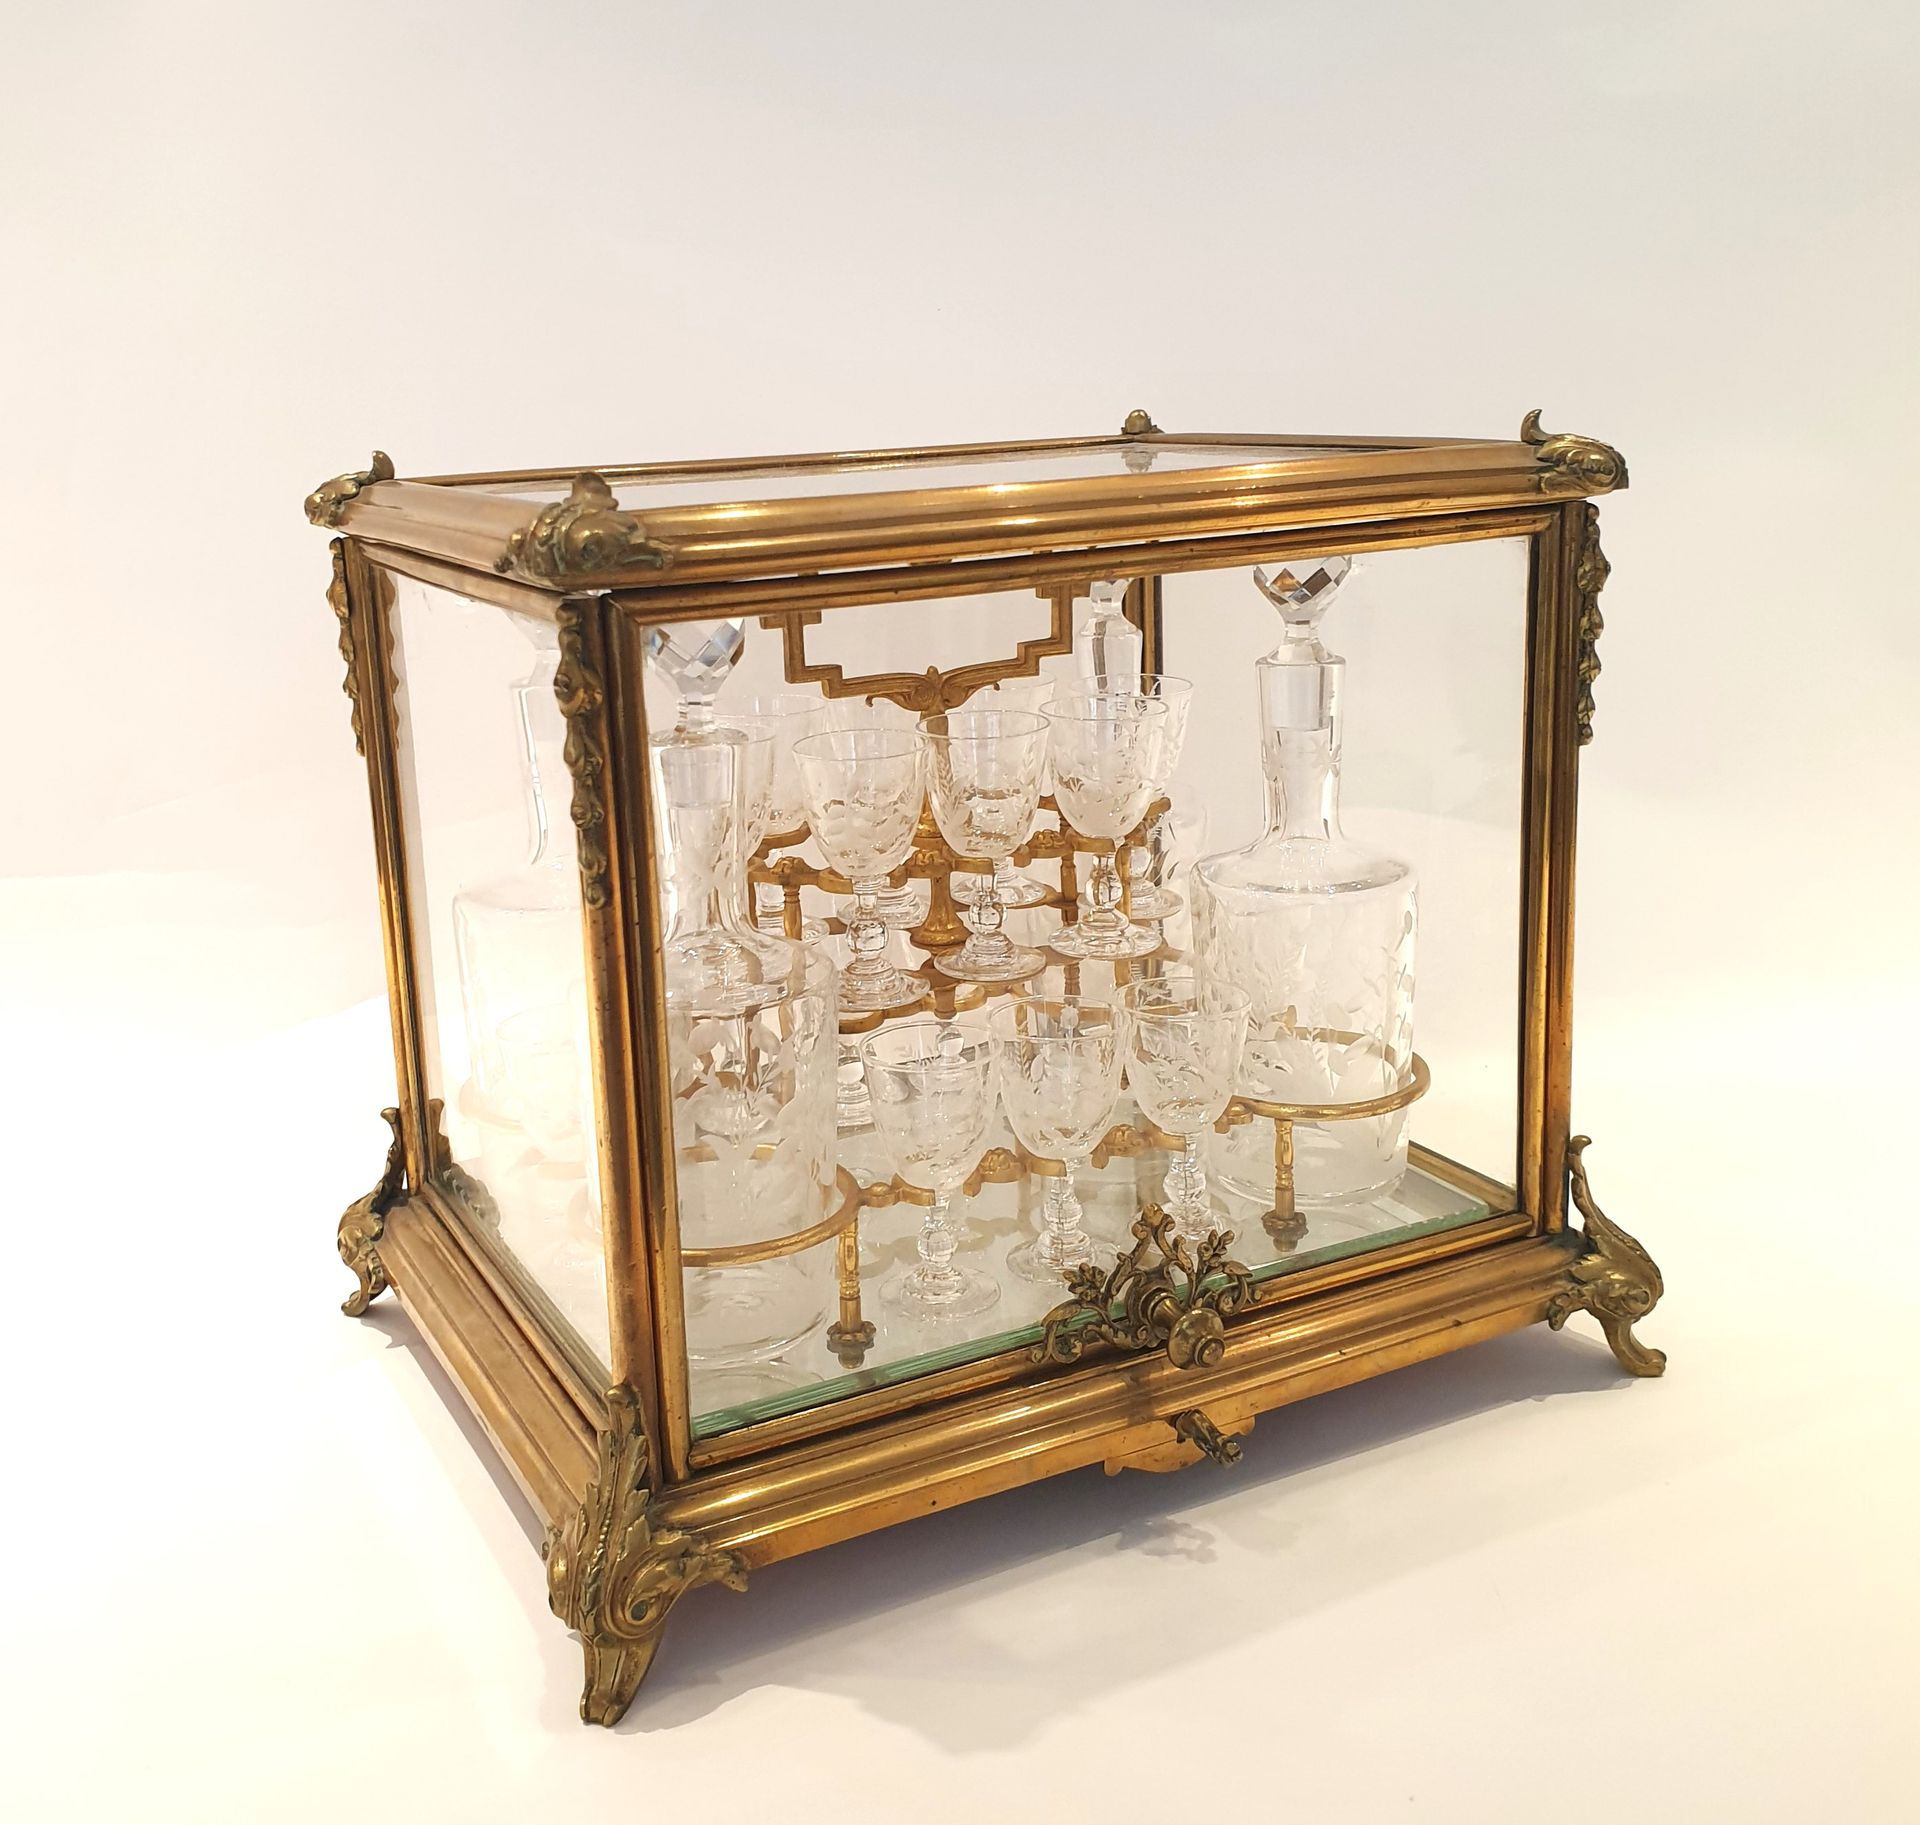 Null 镀金黄铜和雕刻骨瓷利口酒酒窖和玻璃器皿，内有四个雕刻玻璃器皿中的小酒瓶和十六个雕刻花朵和叶子的小水晶杯。
十九世纪 
29 x 34 x 27 厘米